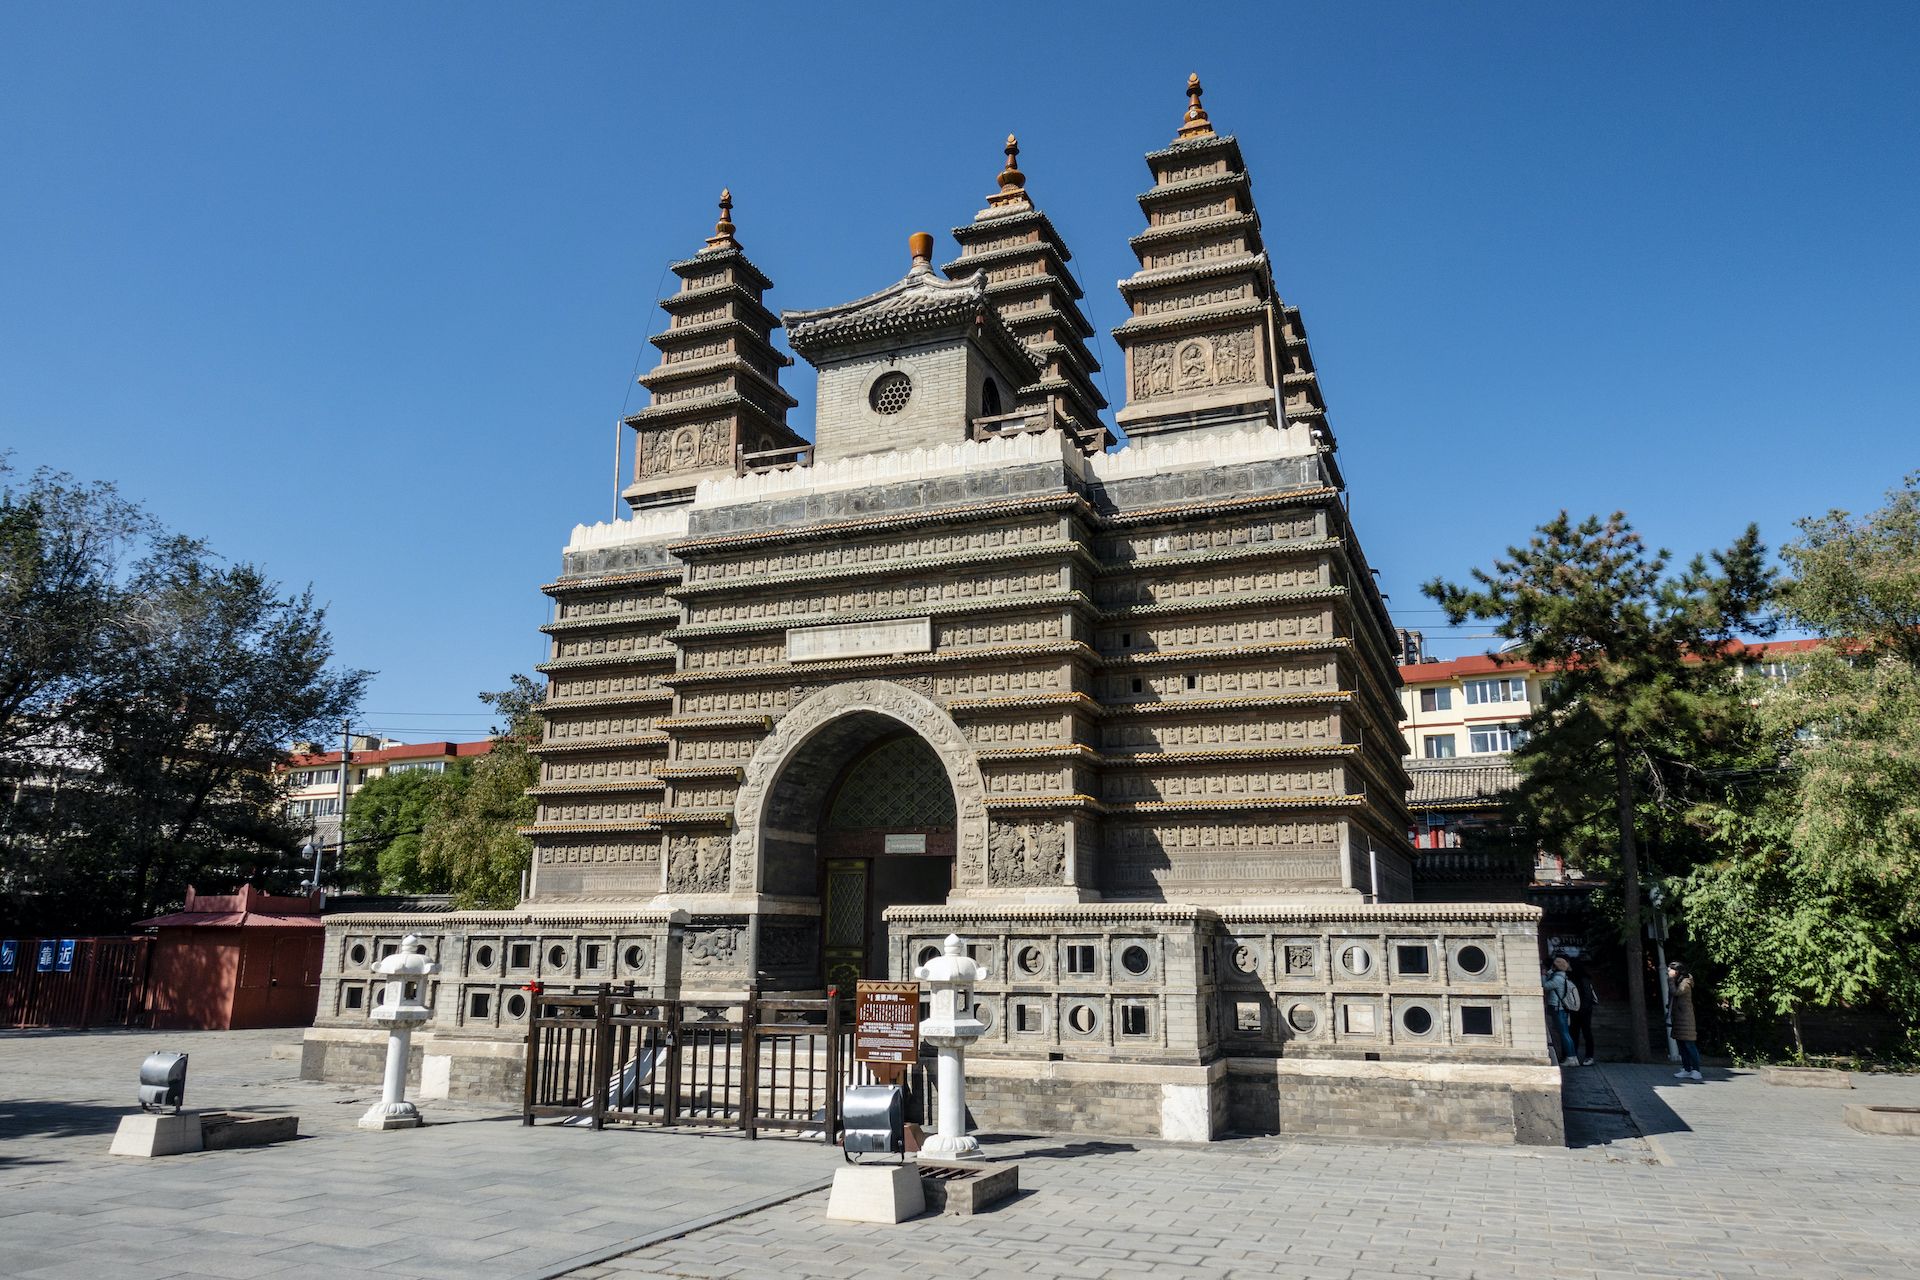 很多人都知道北京海淀有座鼎鼎大名的,建于明代永乐年间的五塔寺(现在